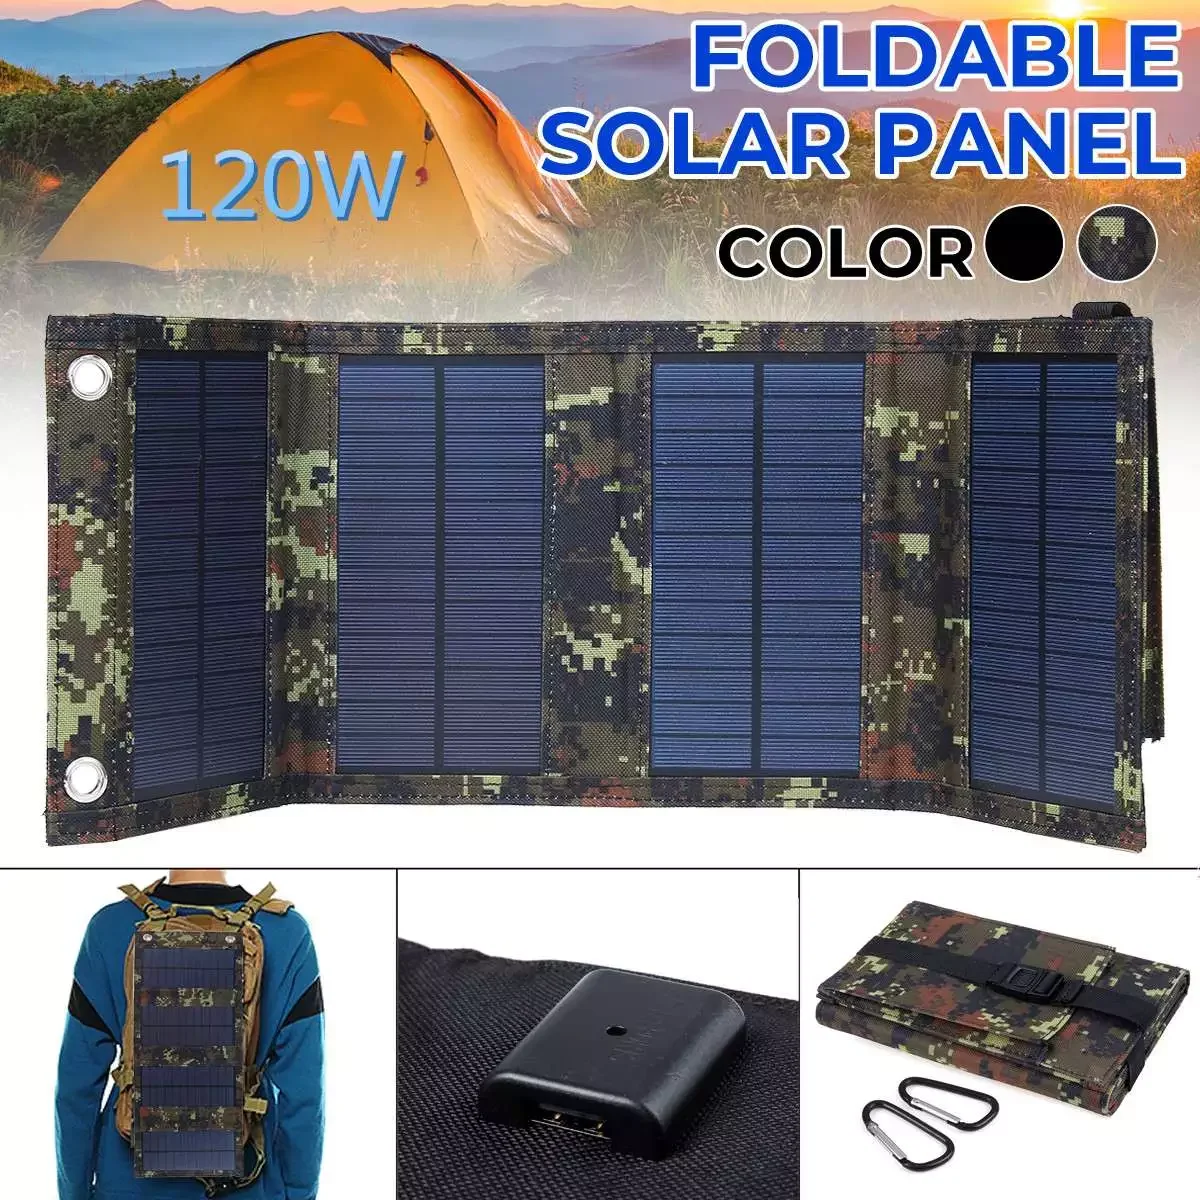 

Складная солнечная панель, 120 Вт, солнечная энергия, зарядное устройство, батарея 5 В, USB портативная солнечная панель s для смартфона, кемпинг...